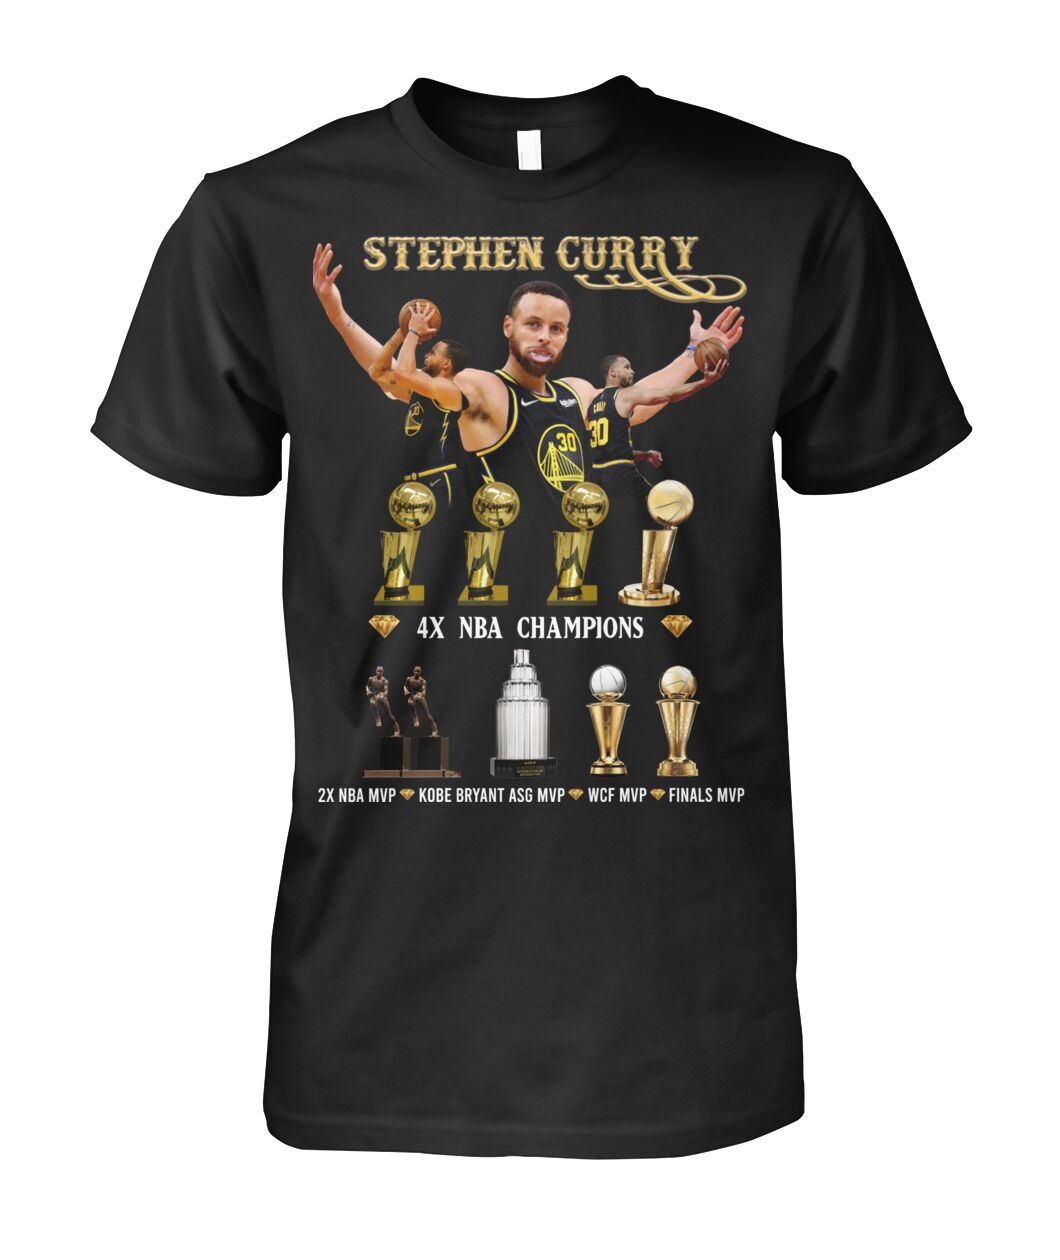 Stephen Curry 4xl NBA Champions Shirt